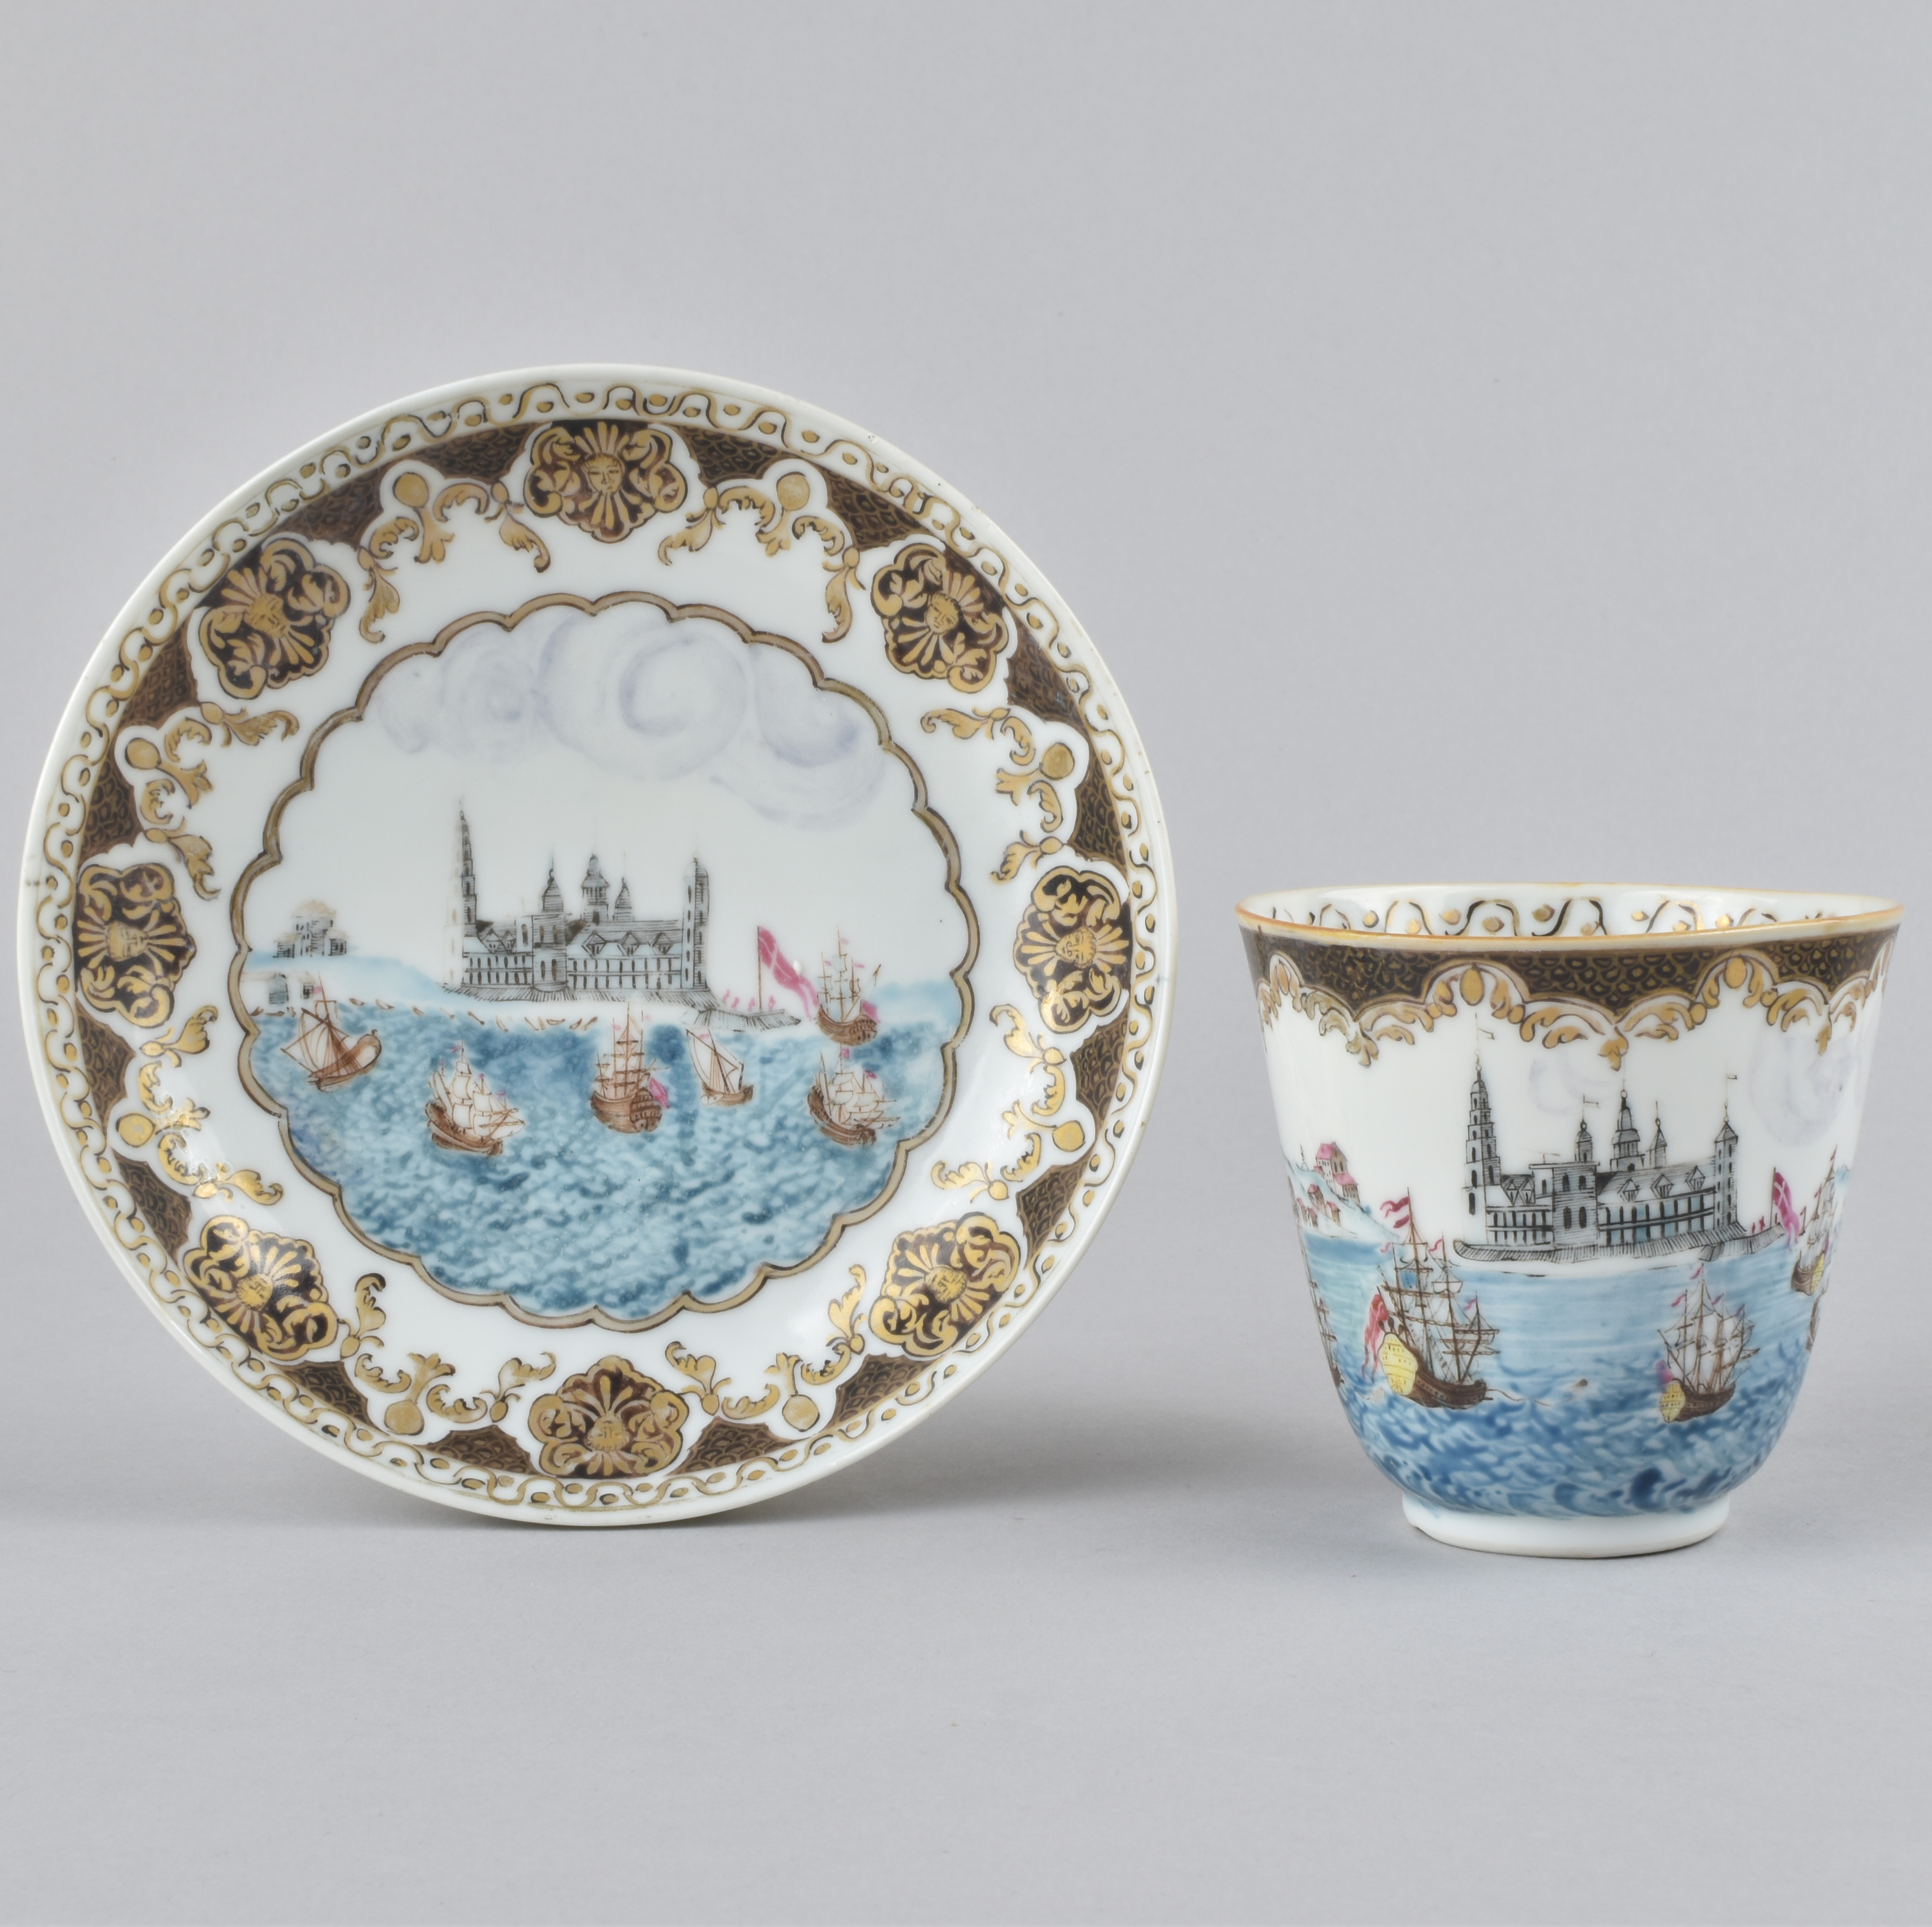 Porcelain Yongzheng period (1736-1795), ca. 1730/1740, China